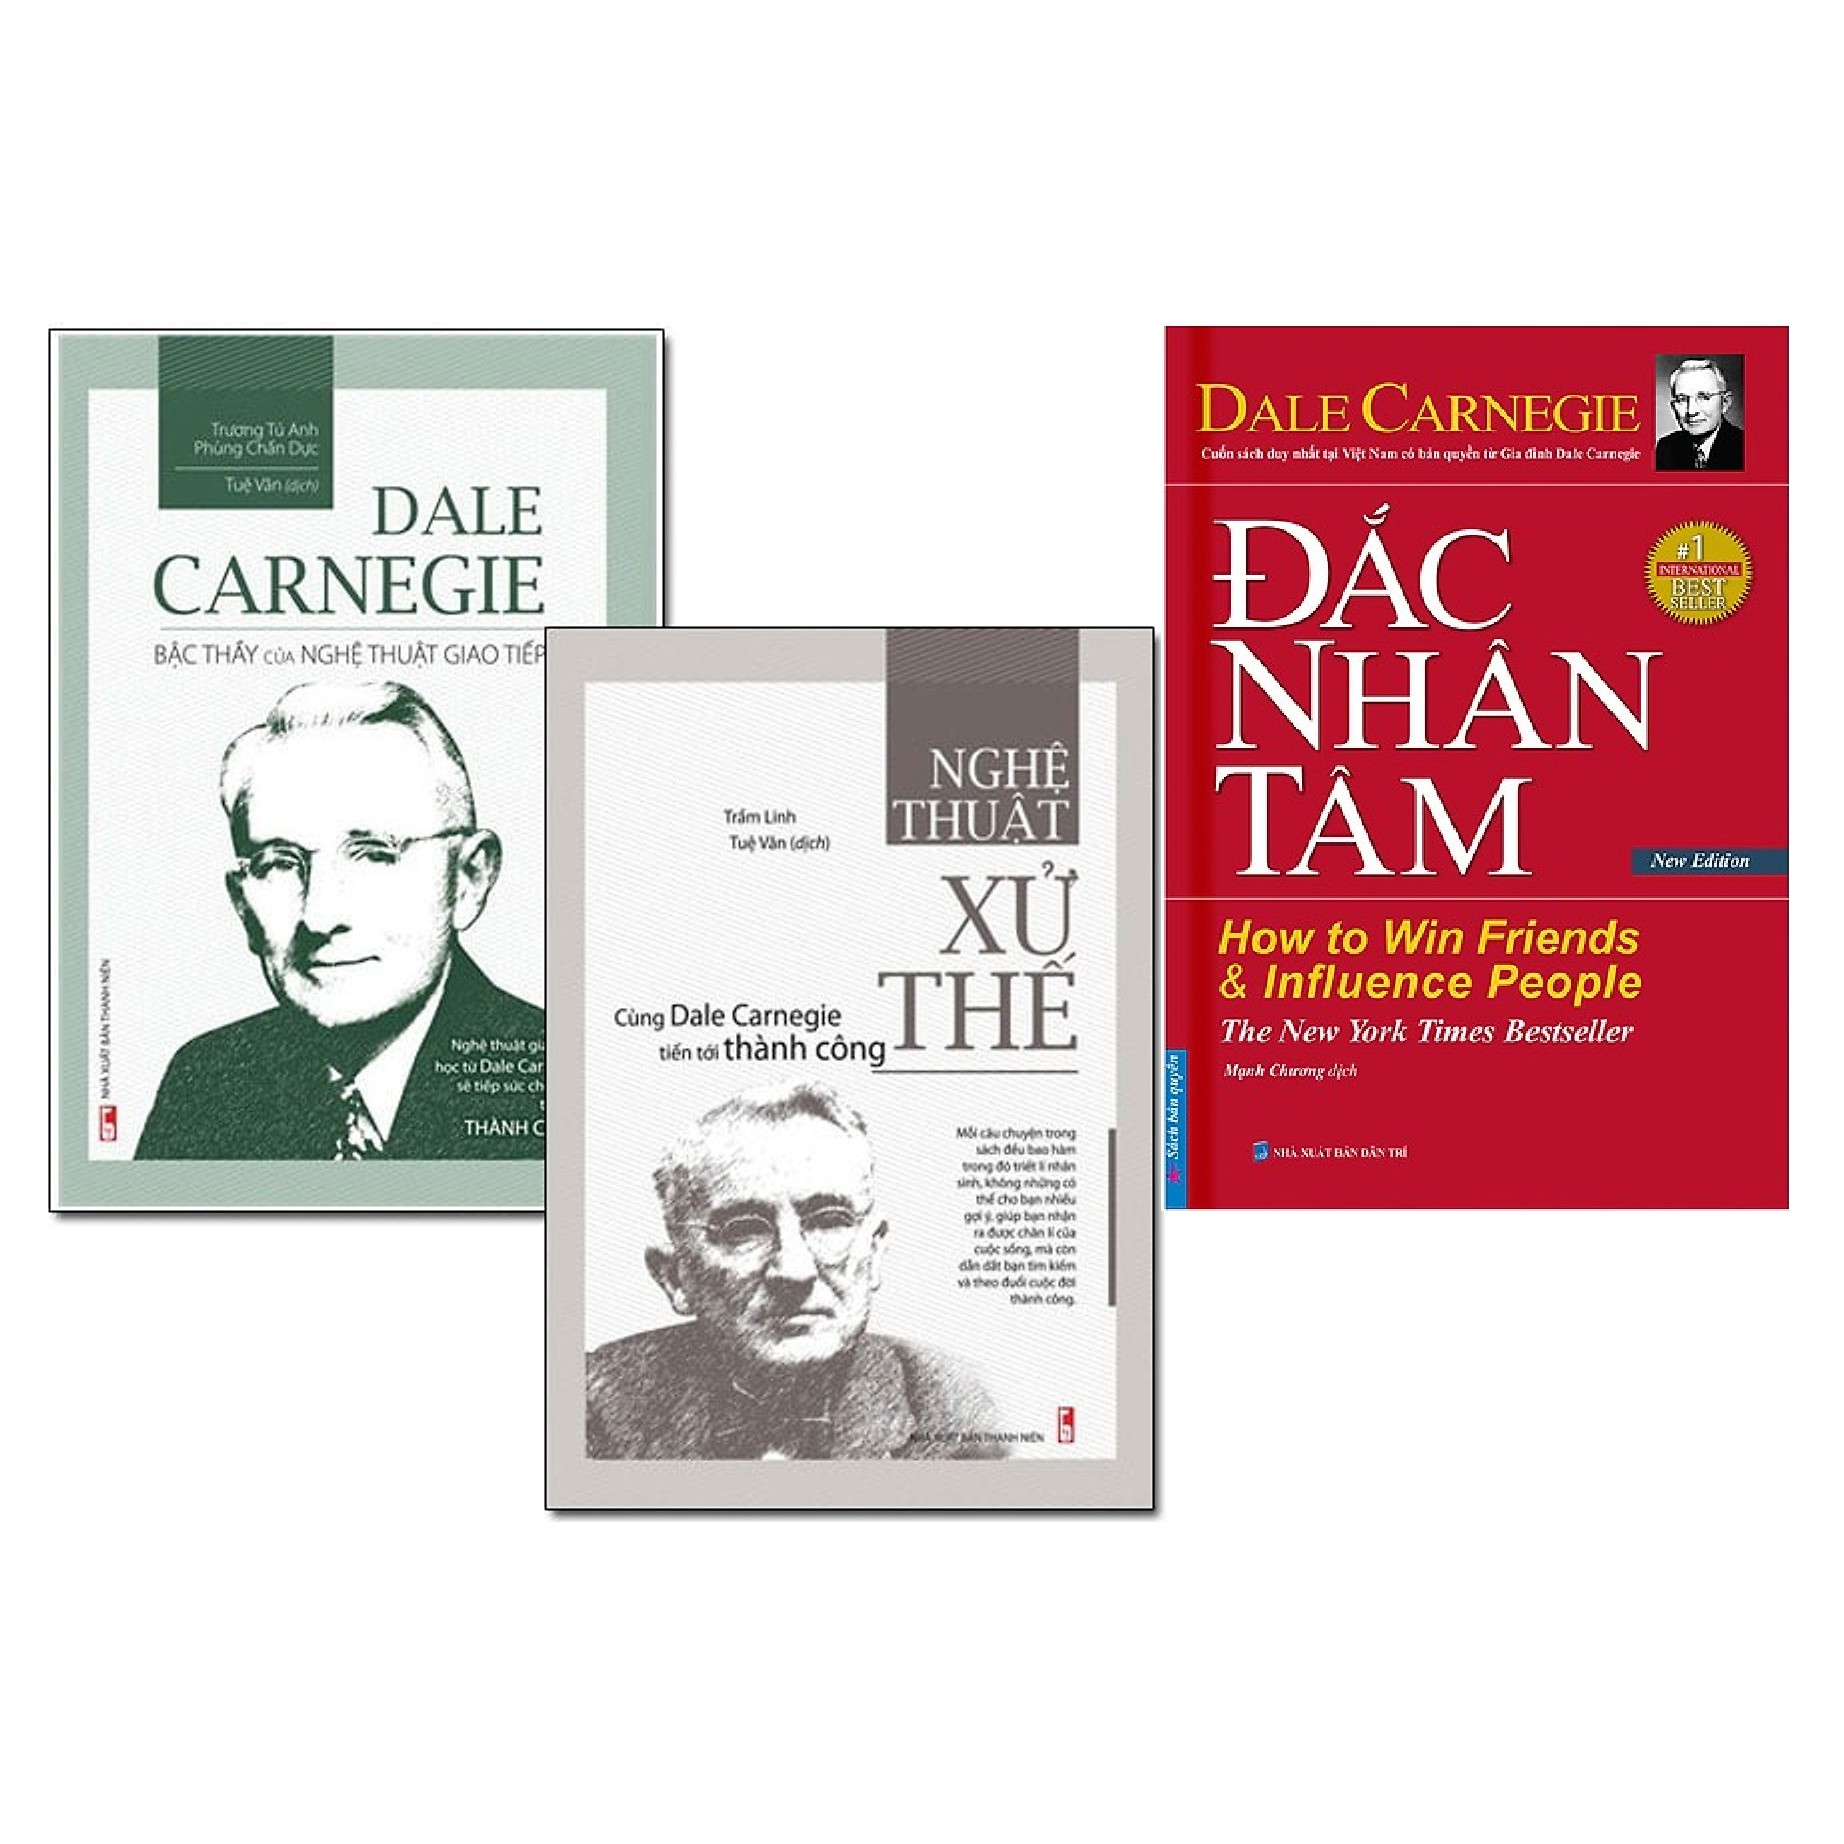 Combo Nghệ Thuật Xử Thế (Dale Carnegie Bậc Thầy Của Nghệ Thuật Giao Tiếp + Xử Thế) - Tái Bản + Đắc Nhân Tâm - Bìa Cứng